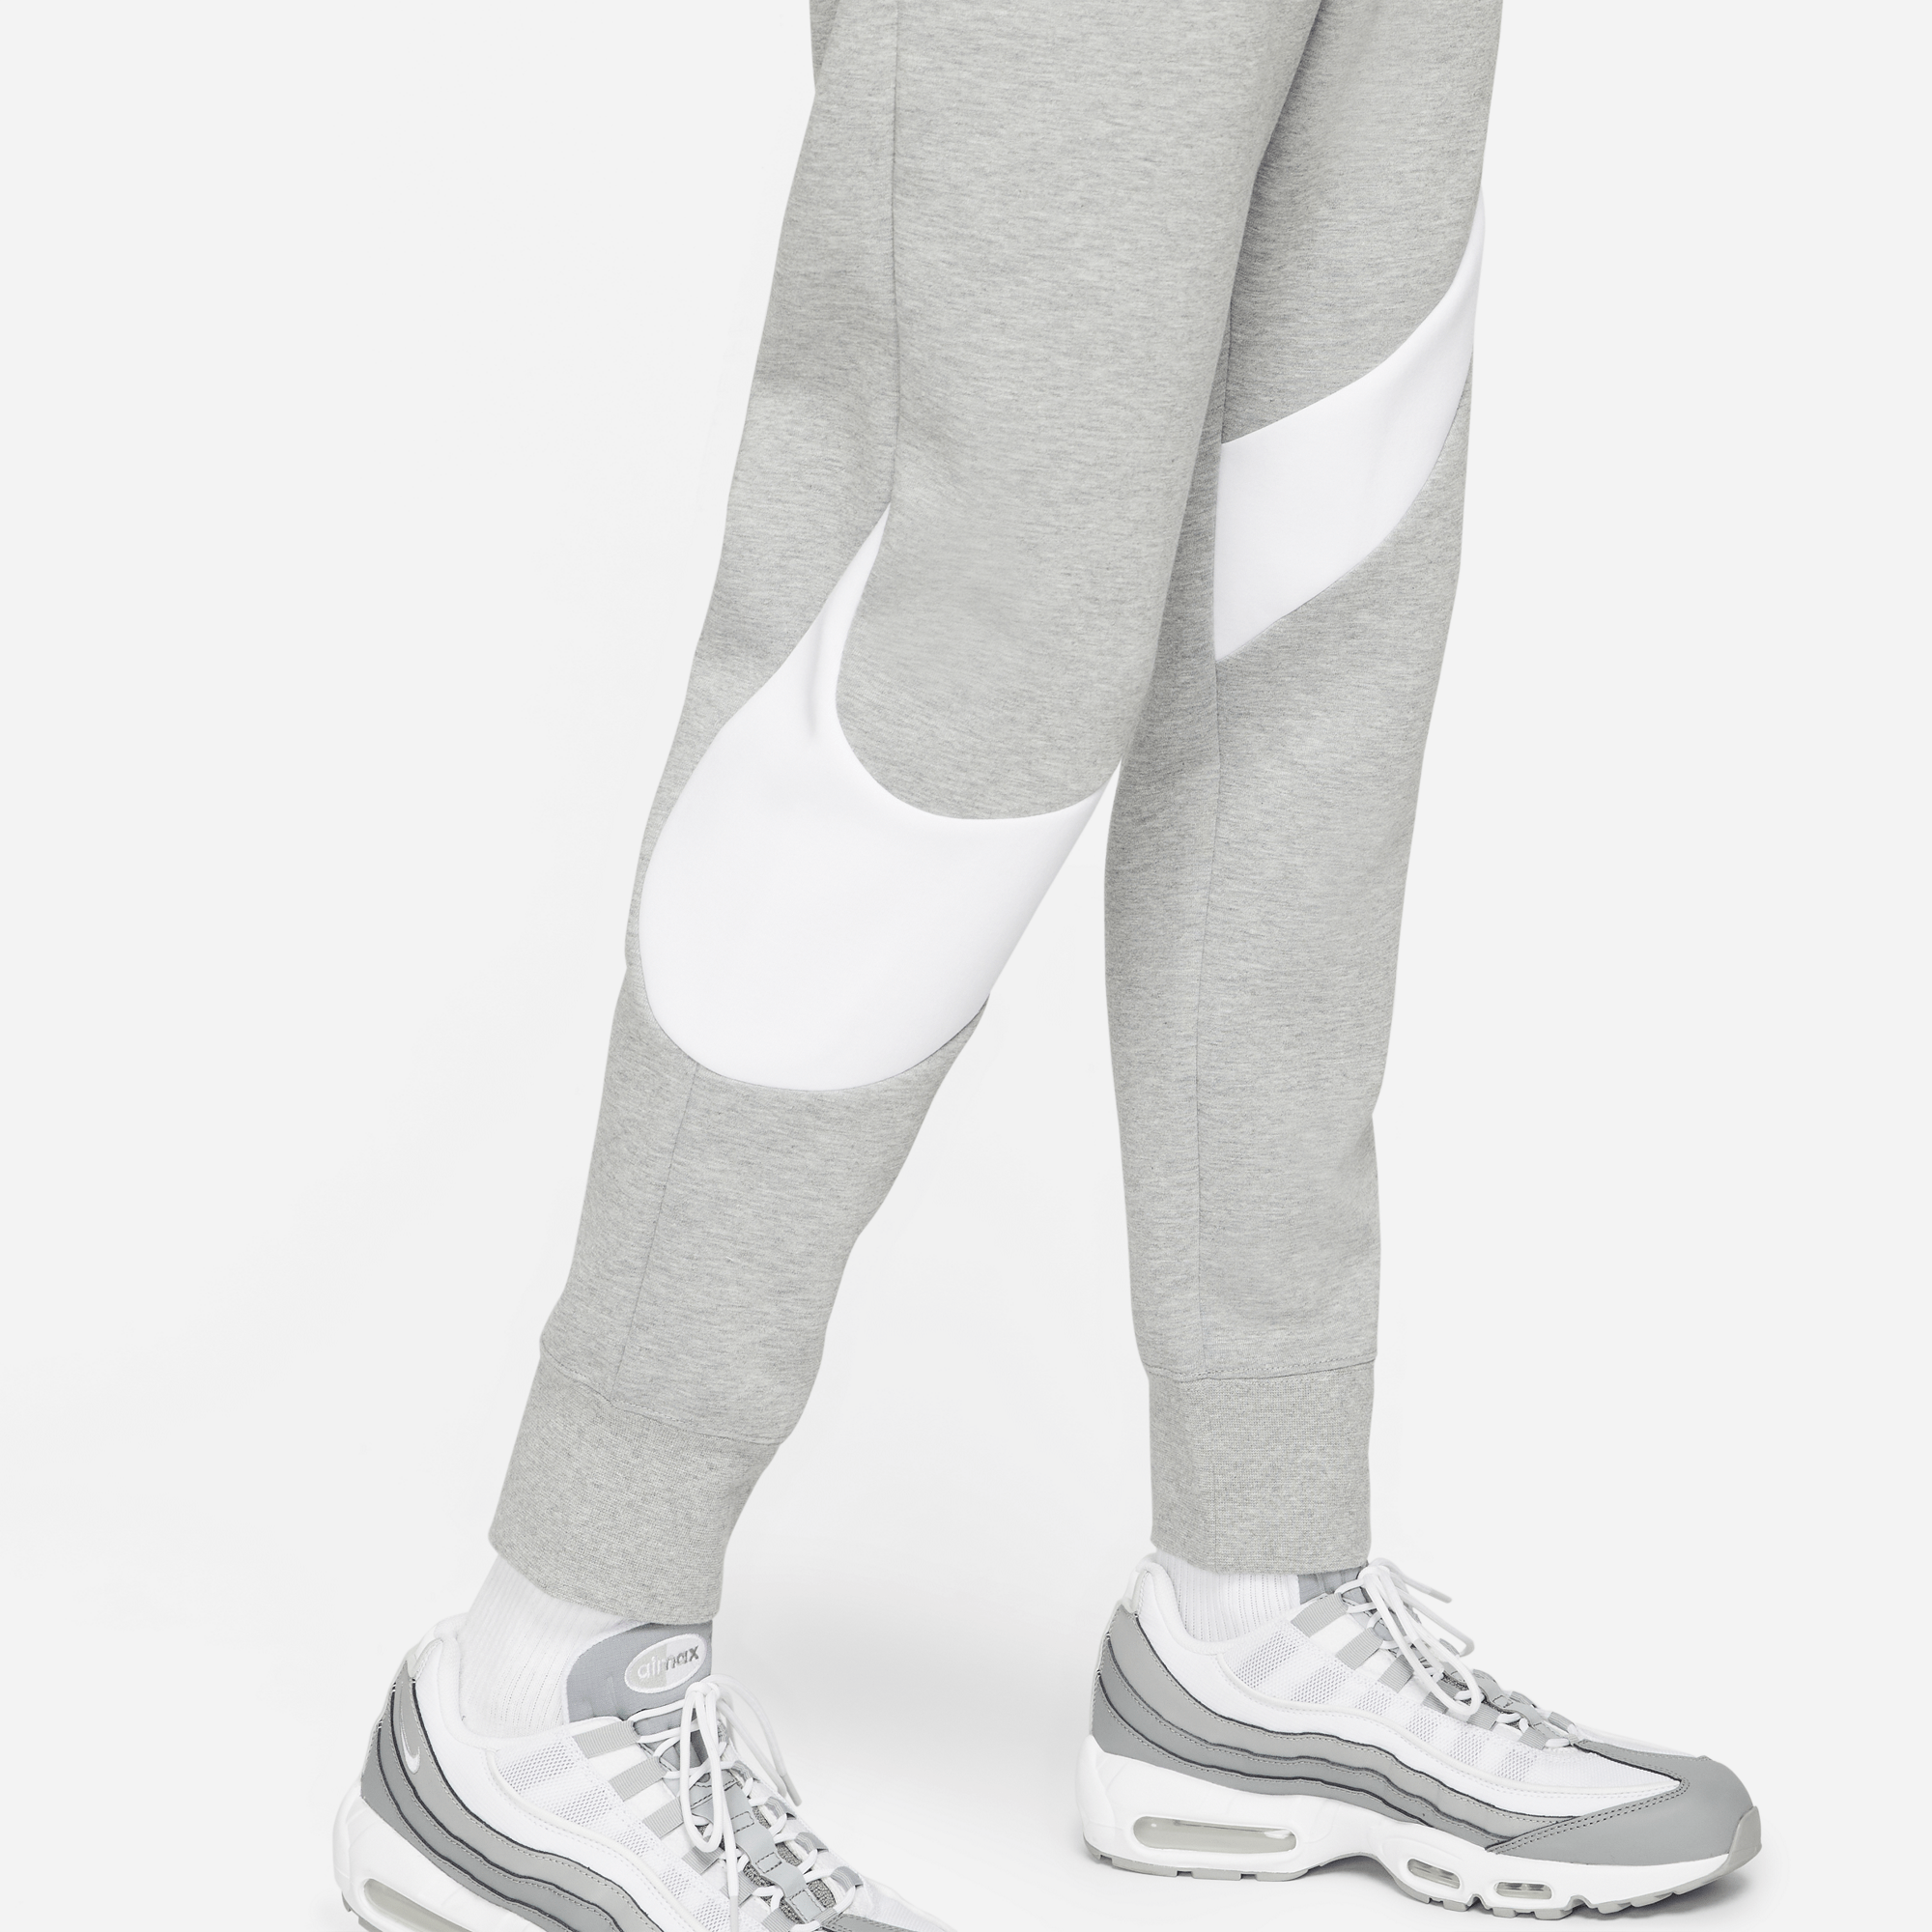 Nike S / GREY Nike Sportswear Swoosh Tech Fleece Pants - Men's DH1023-063